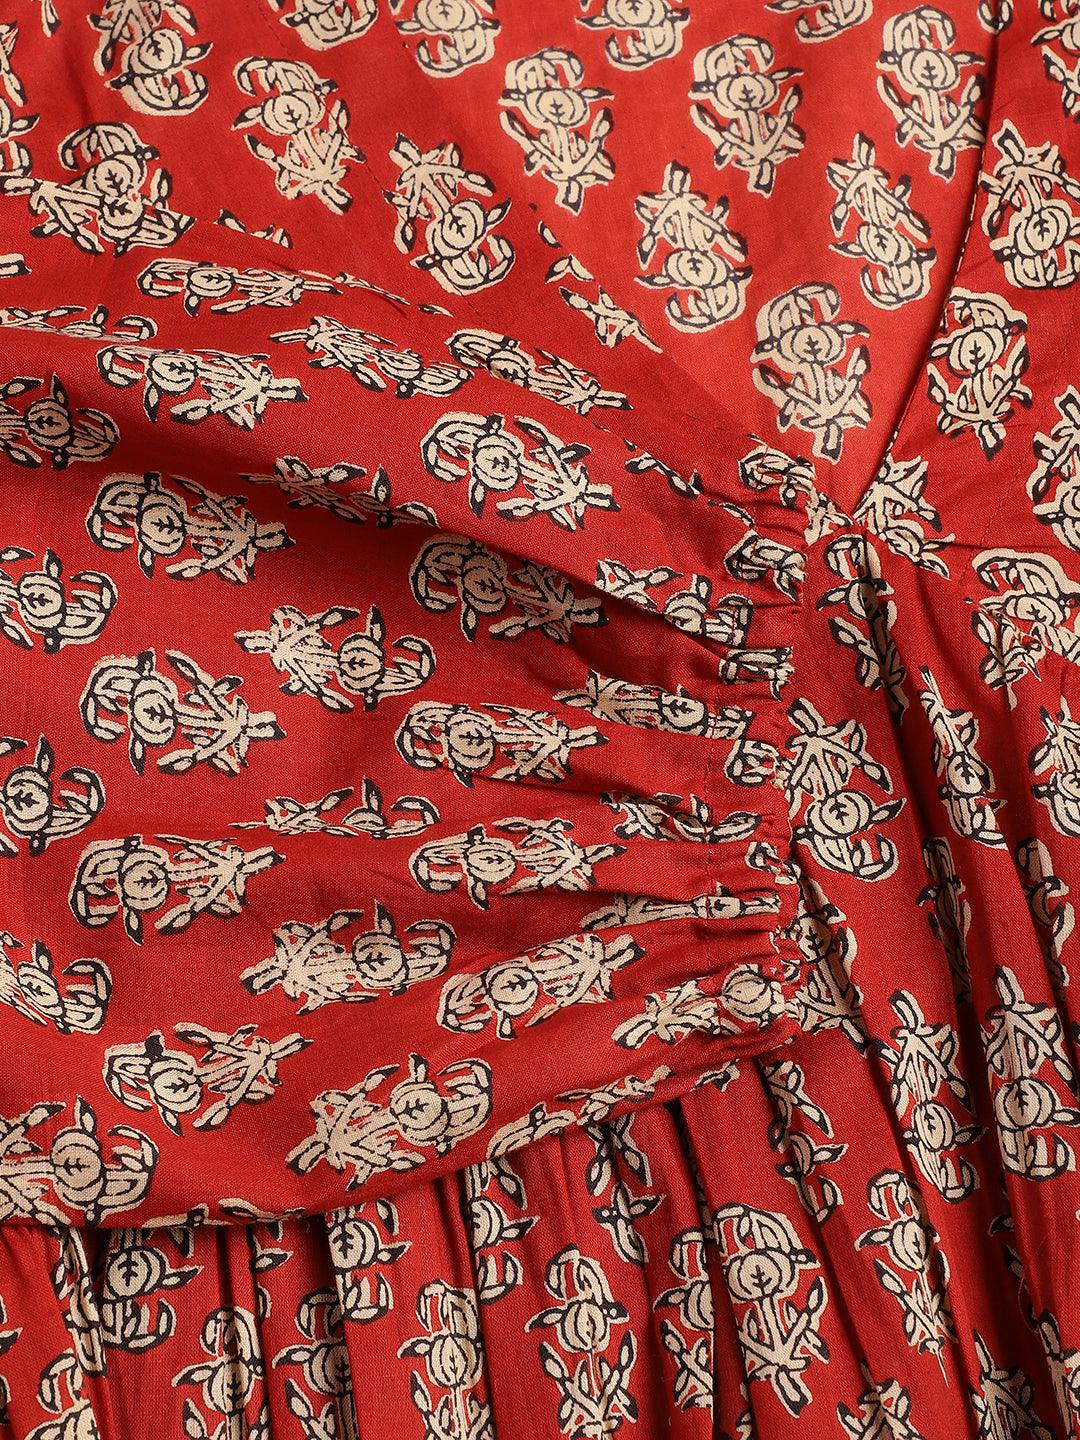 Divena Red Floral Cotton Pemplum Style Top - divena world